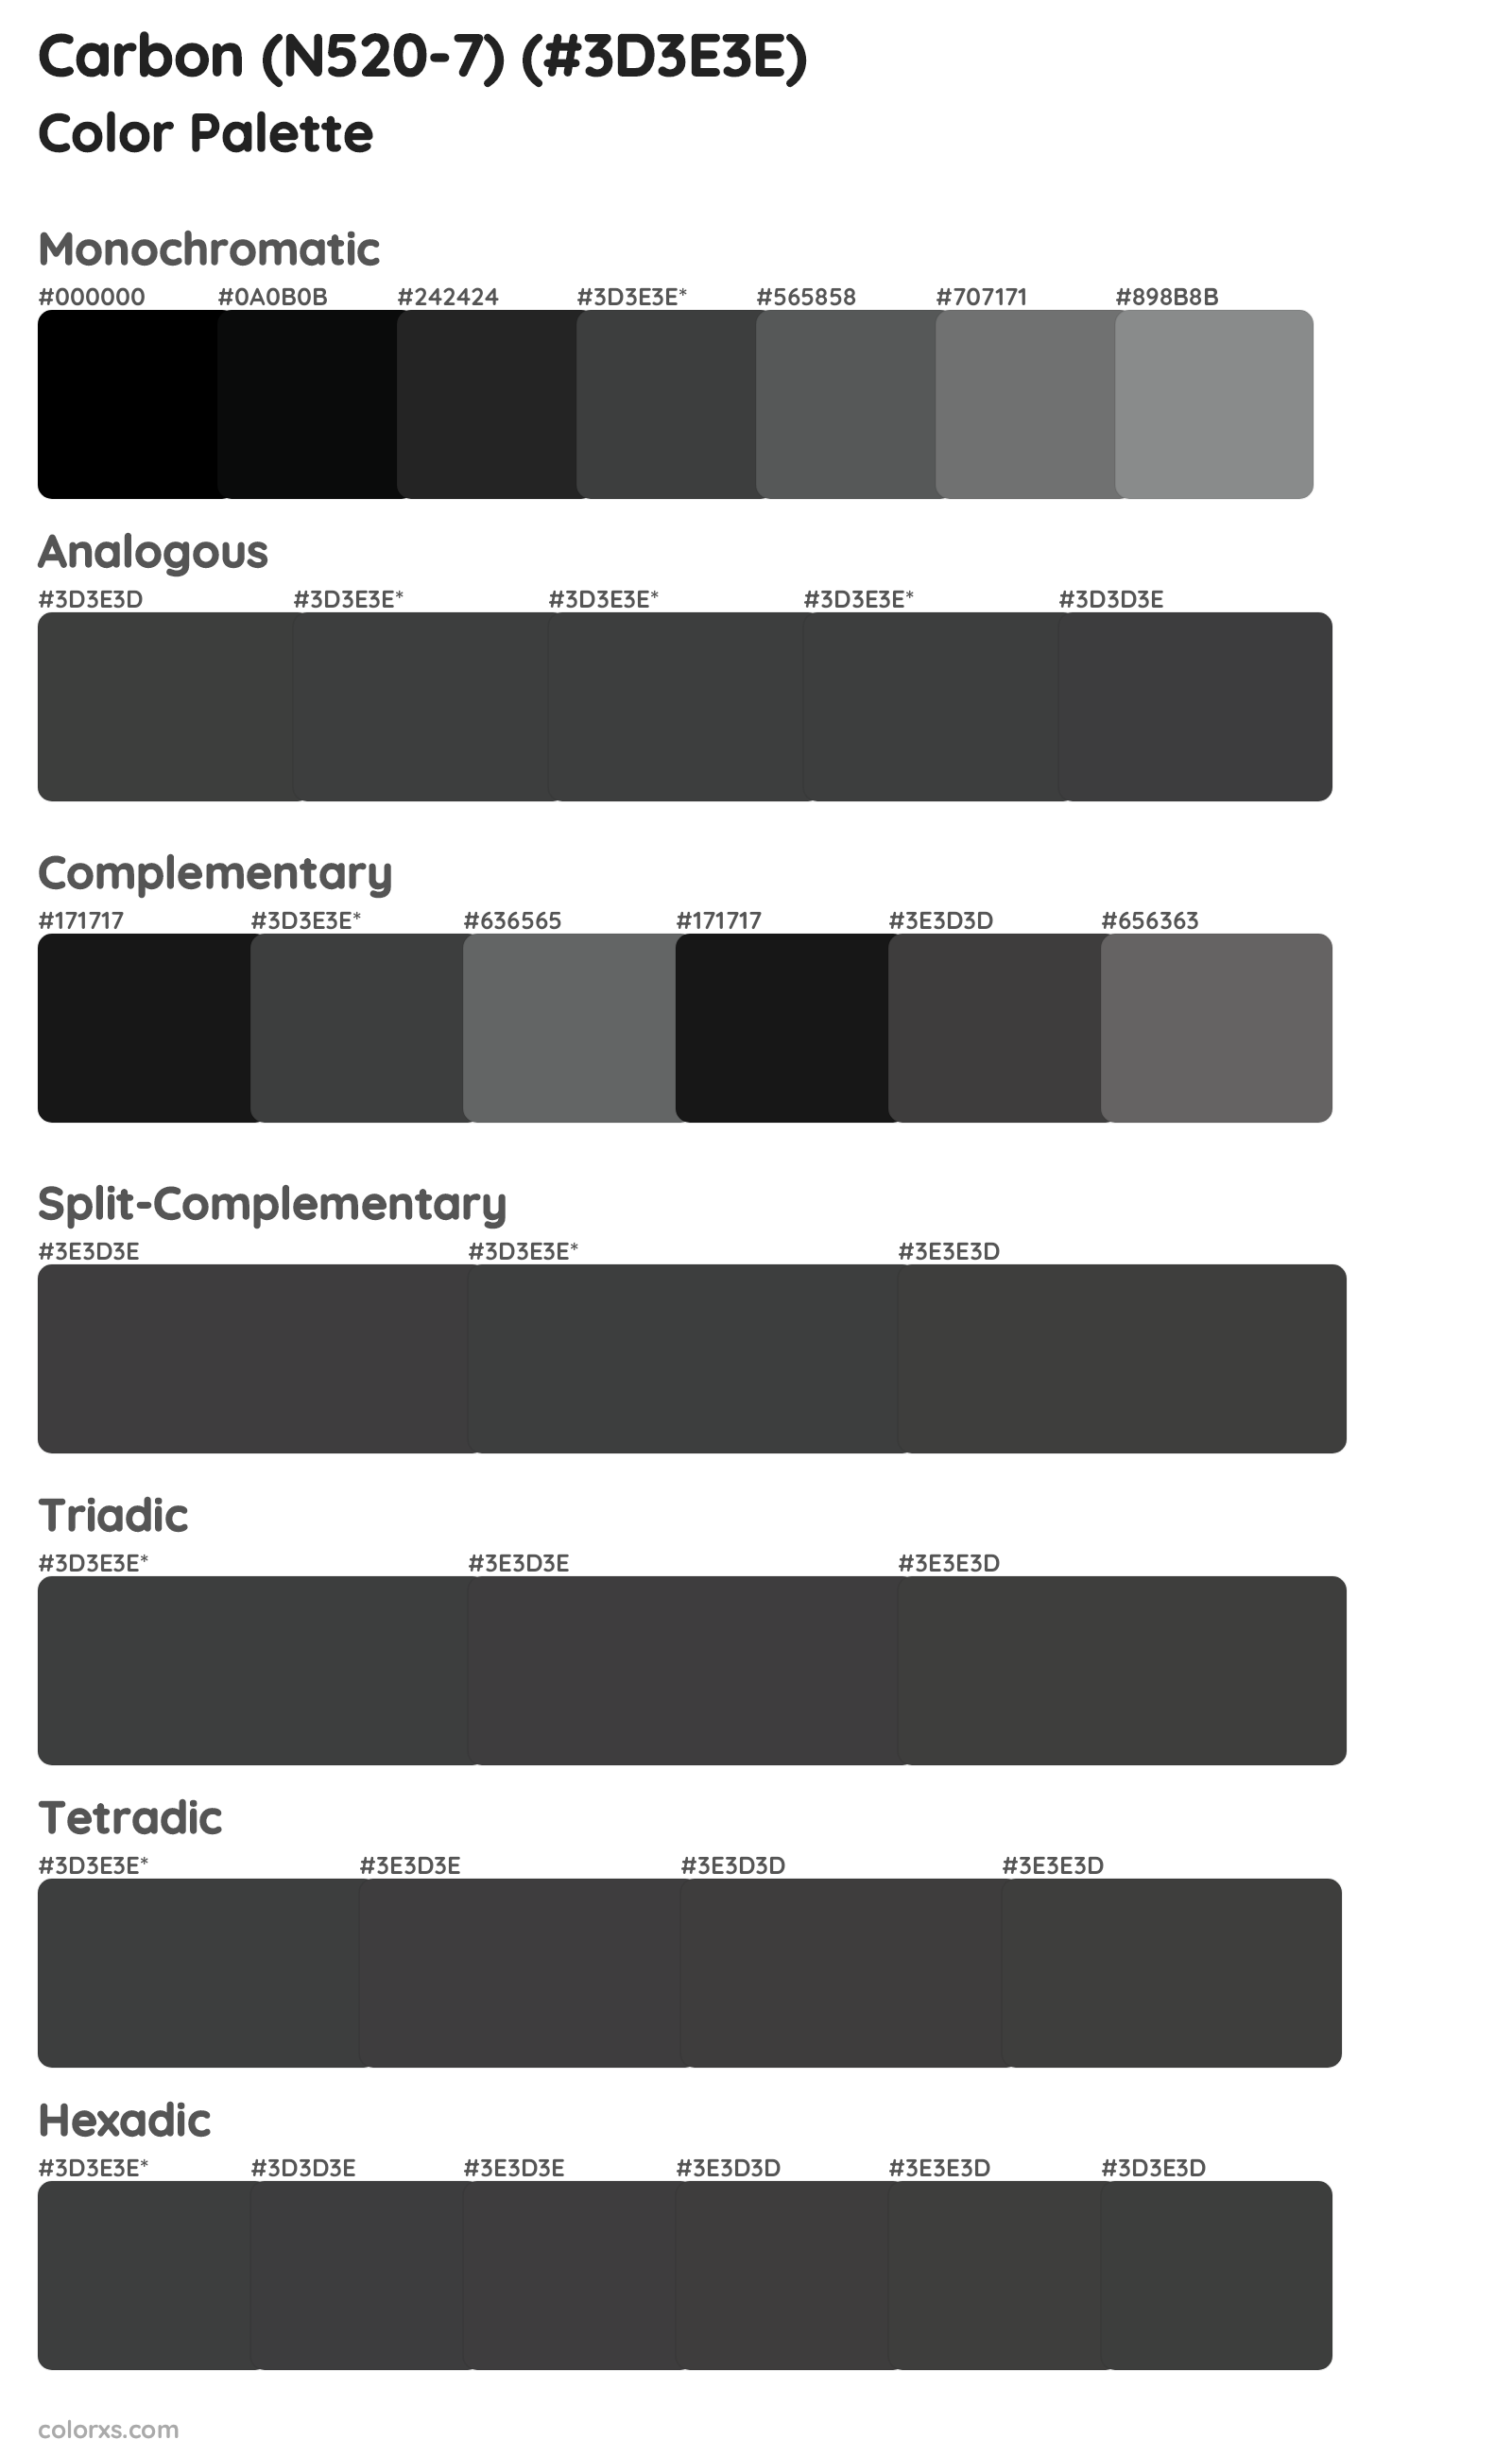 Carbon (N520-7) Color Scheme Palettes